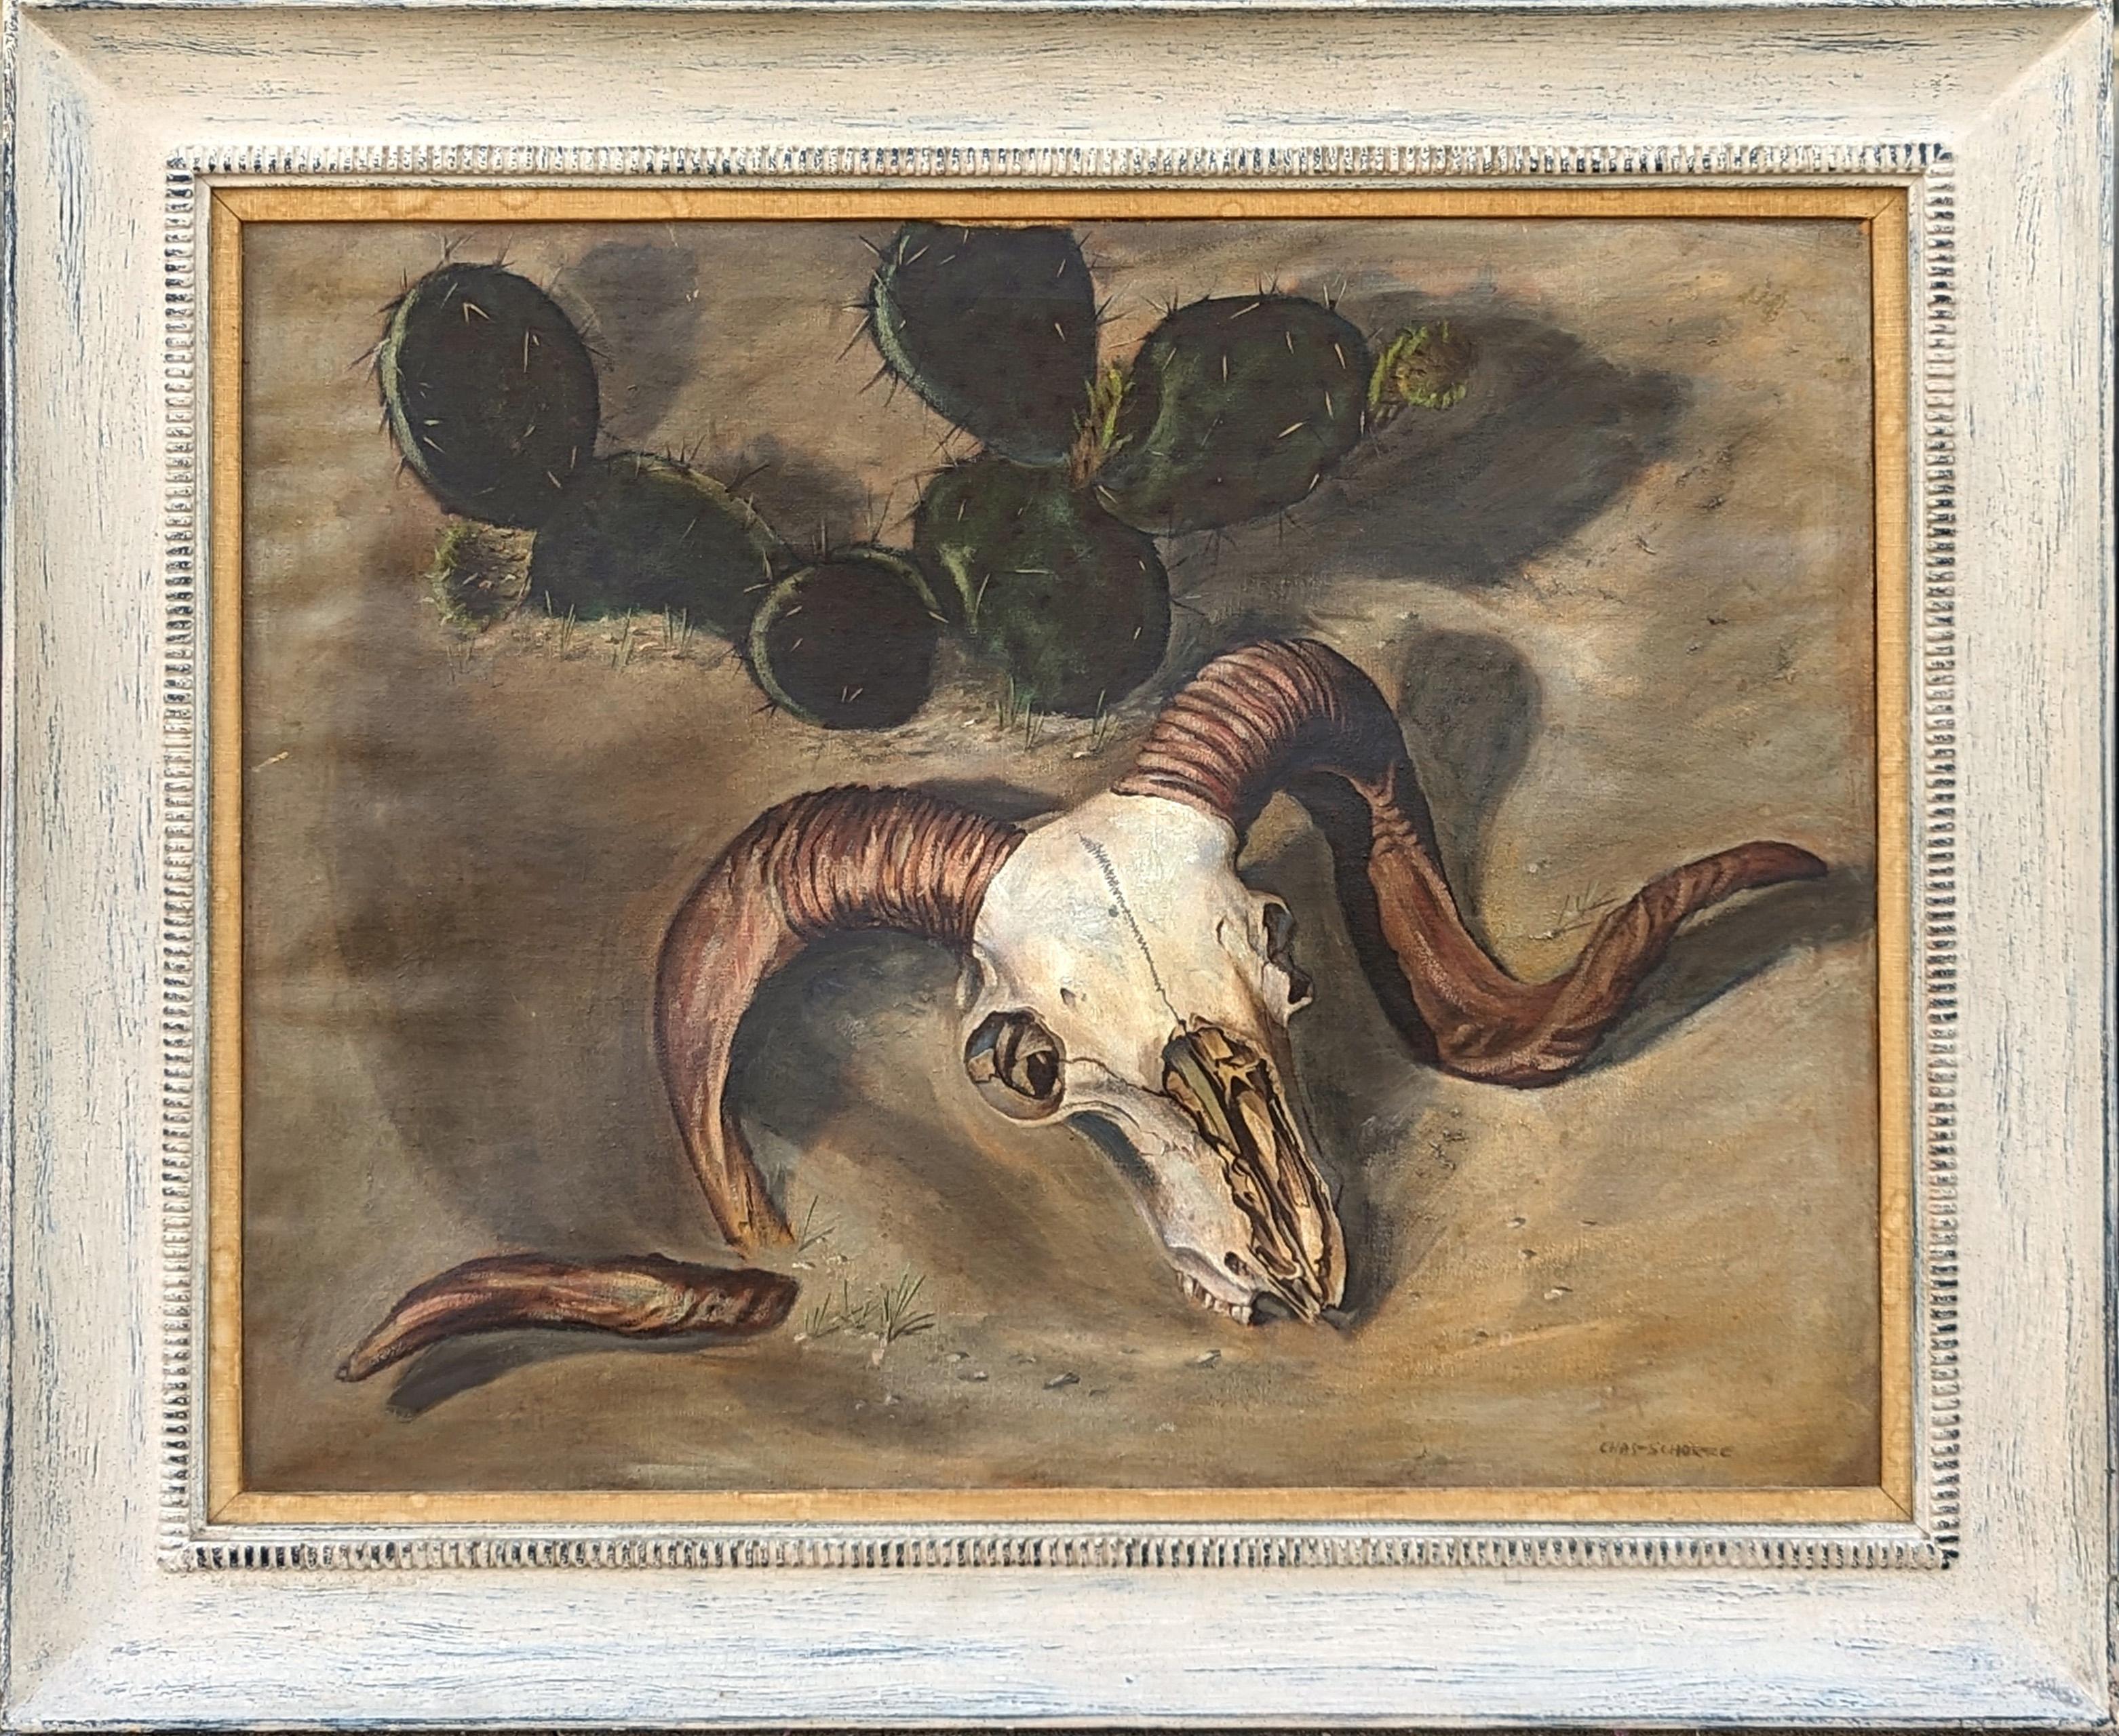 Animal Painting Charles Schorre - Peinture moderne de paysage du désert occidental avec crâne de bélier et cactus naturaliste 